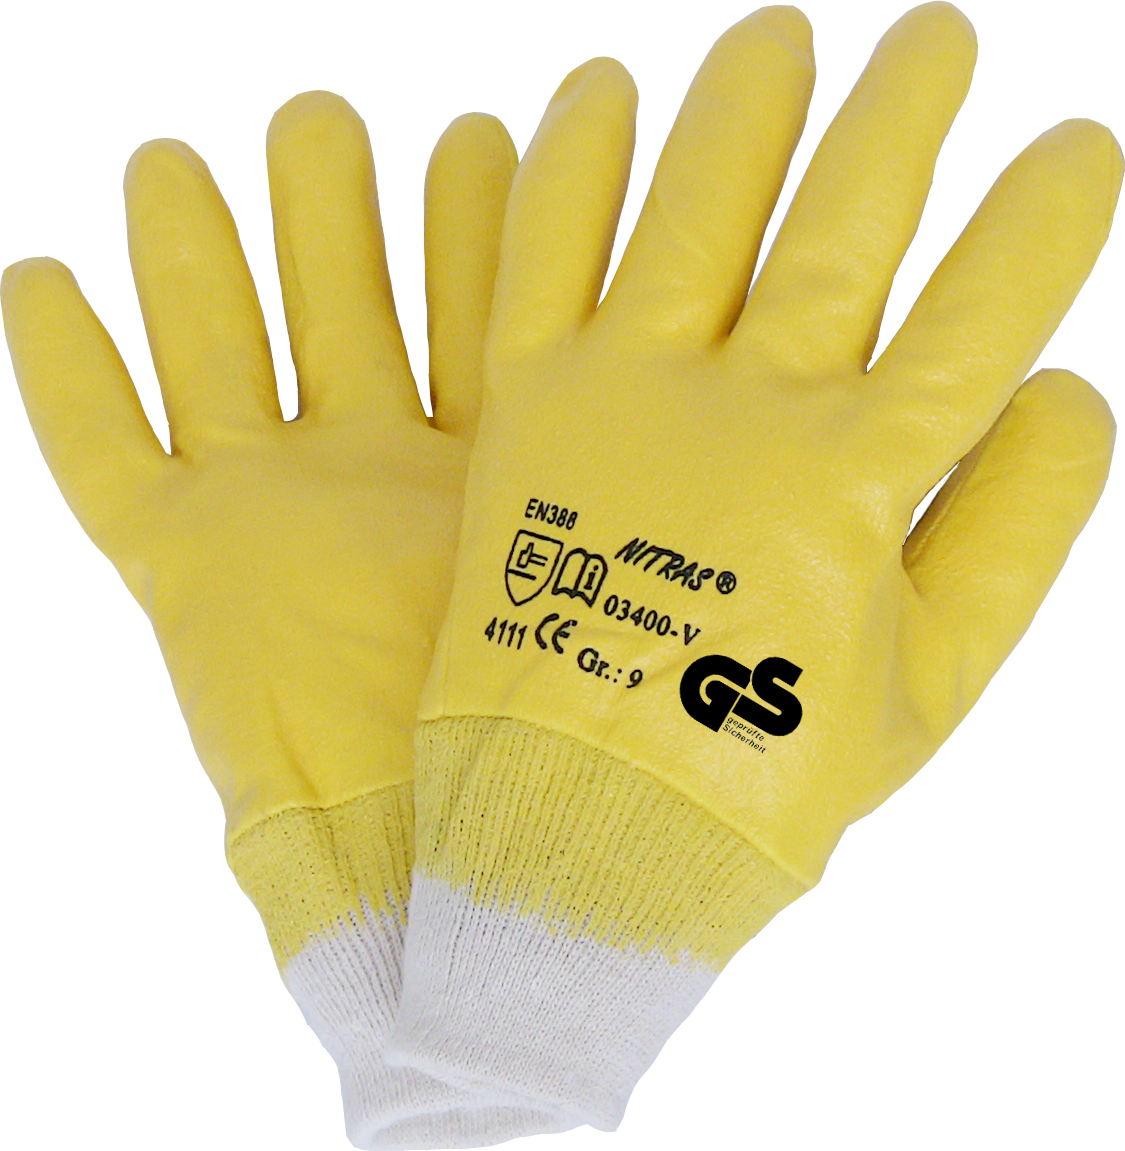 10 XL Nitrilhandschuhe 20 Paar Arbeitshandschuhe Handschuhe gelb Gr